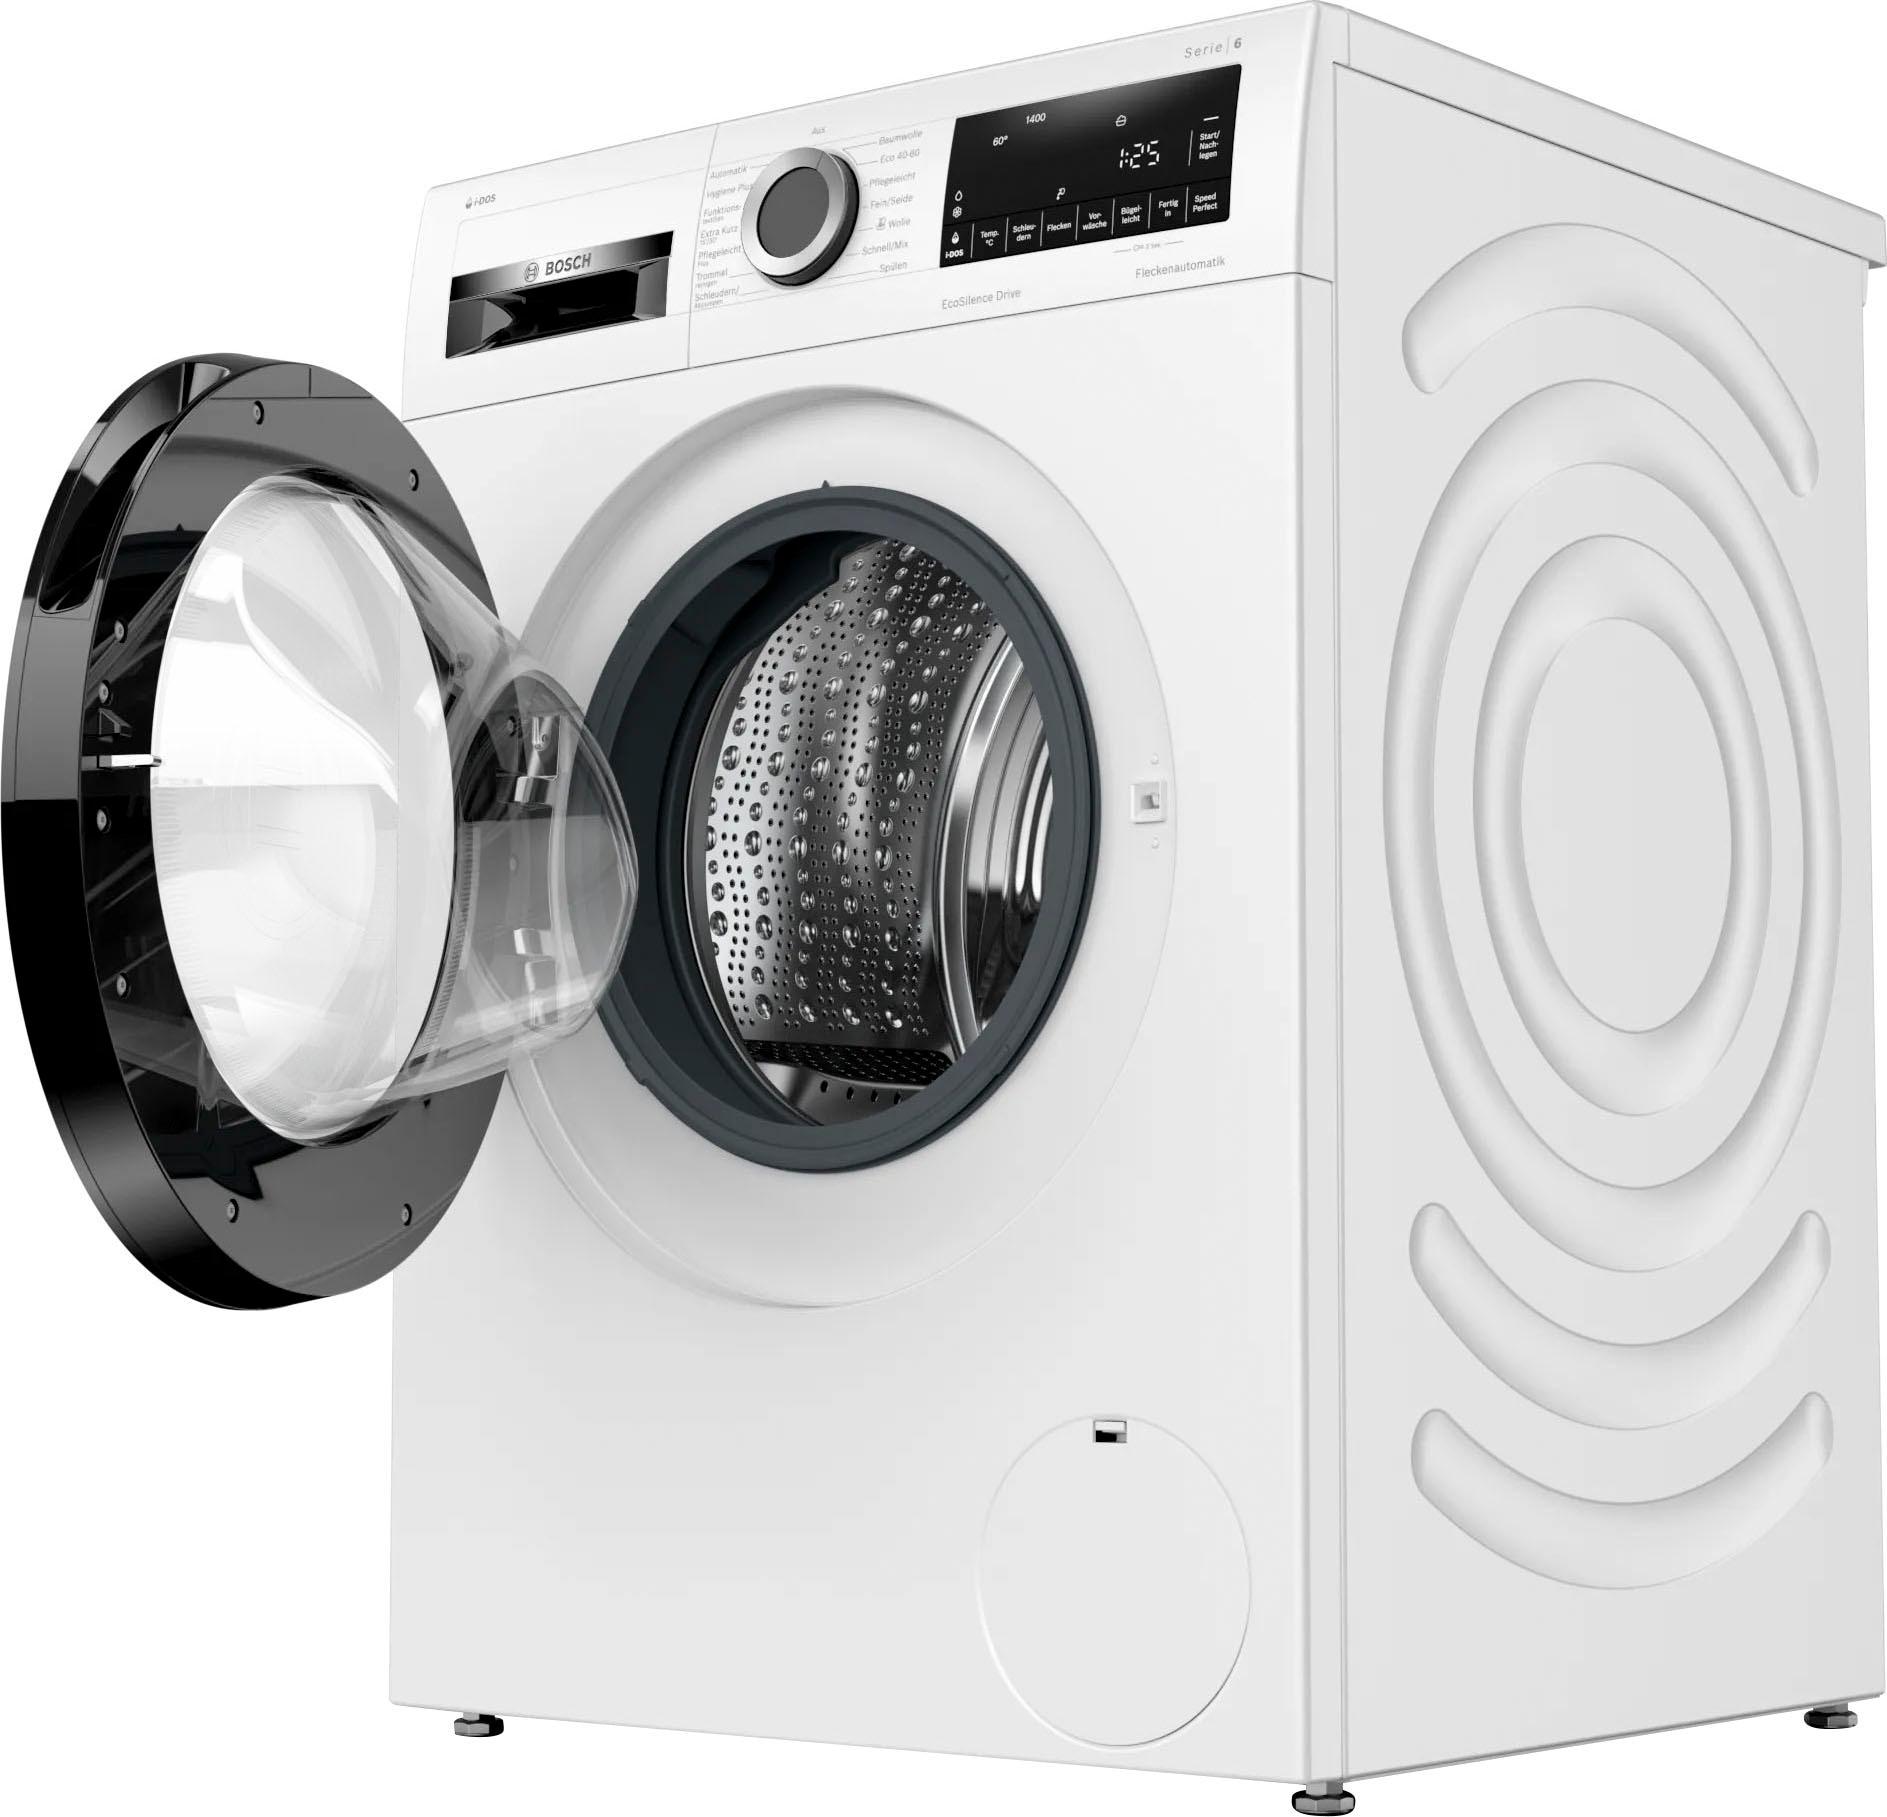 【Neueste】 BOSCH Waschmaschine »WGG154A10«, WGG154A10, 10 bei U/min 1400 kg, online